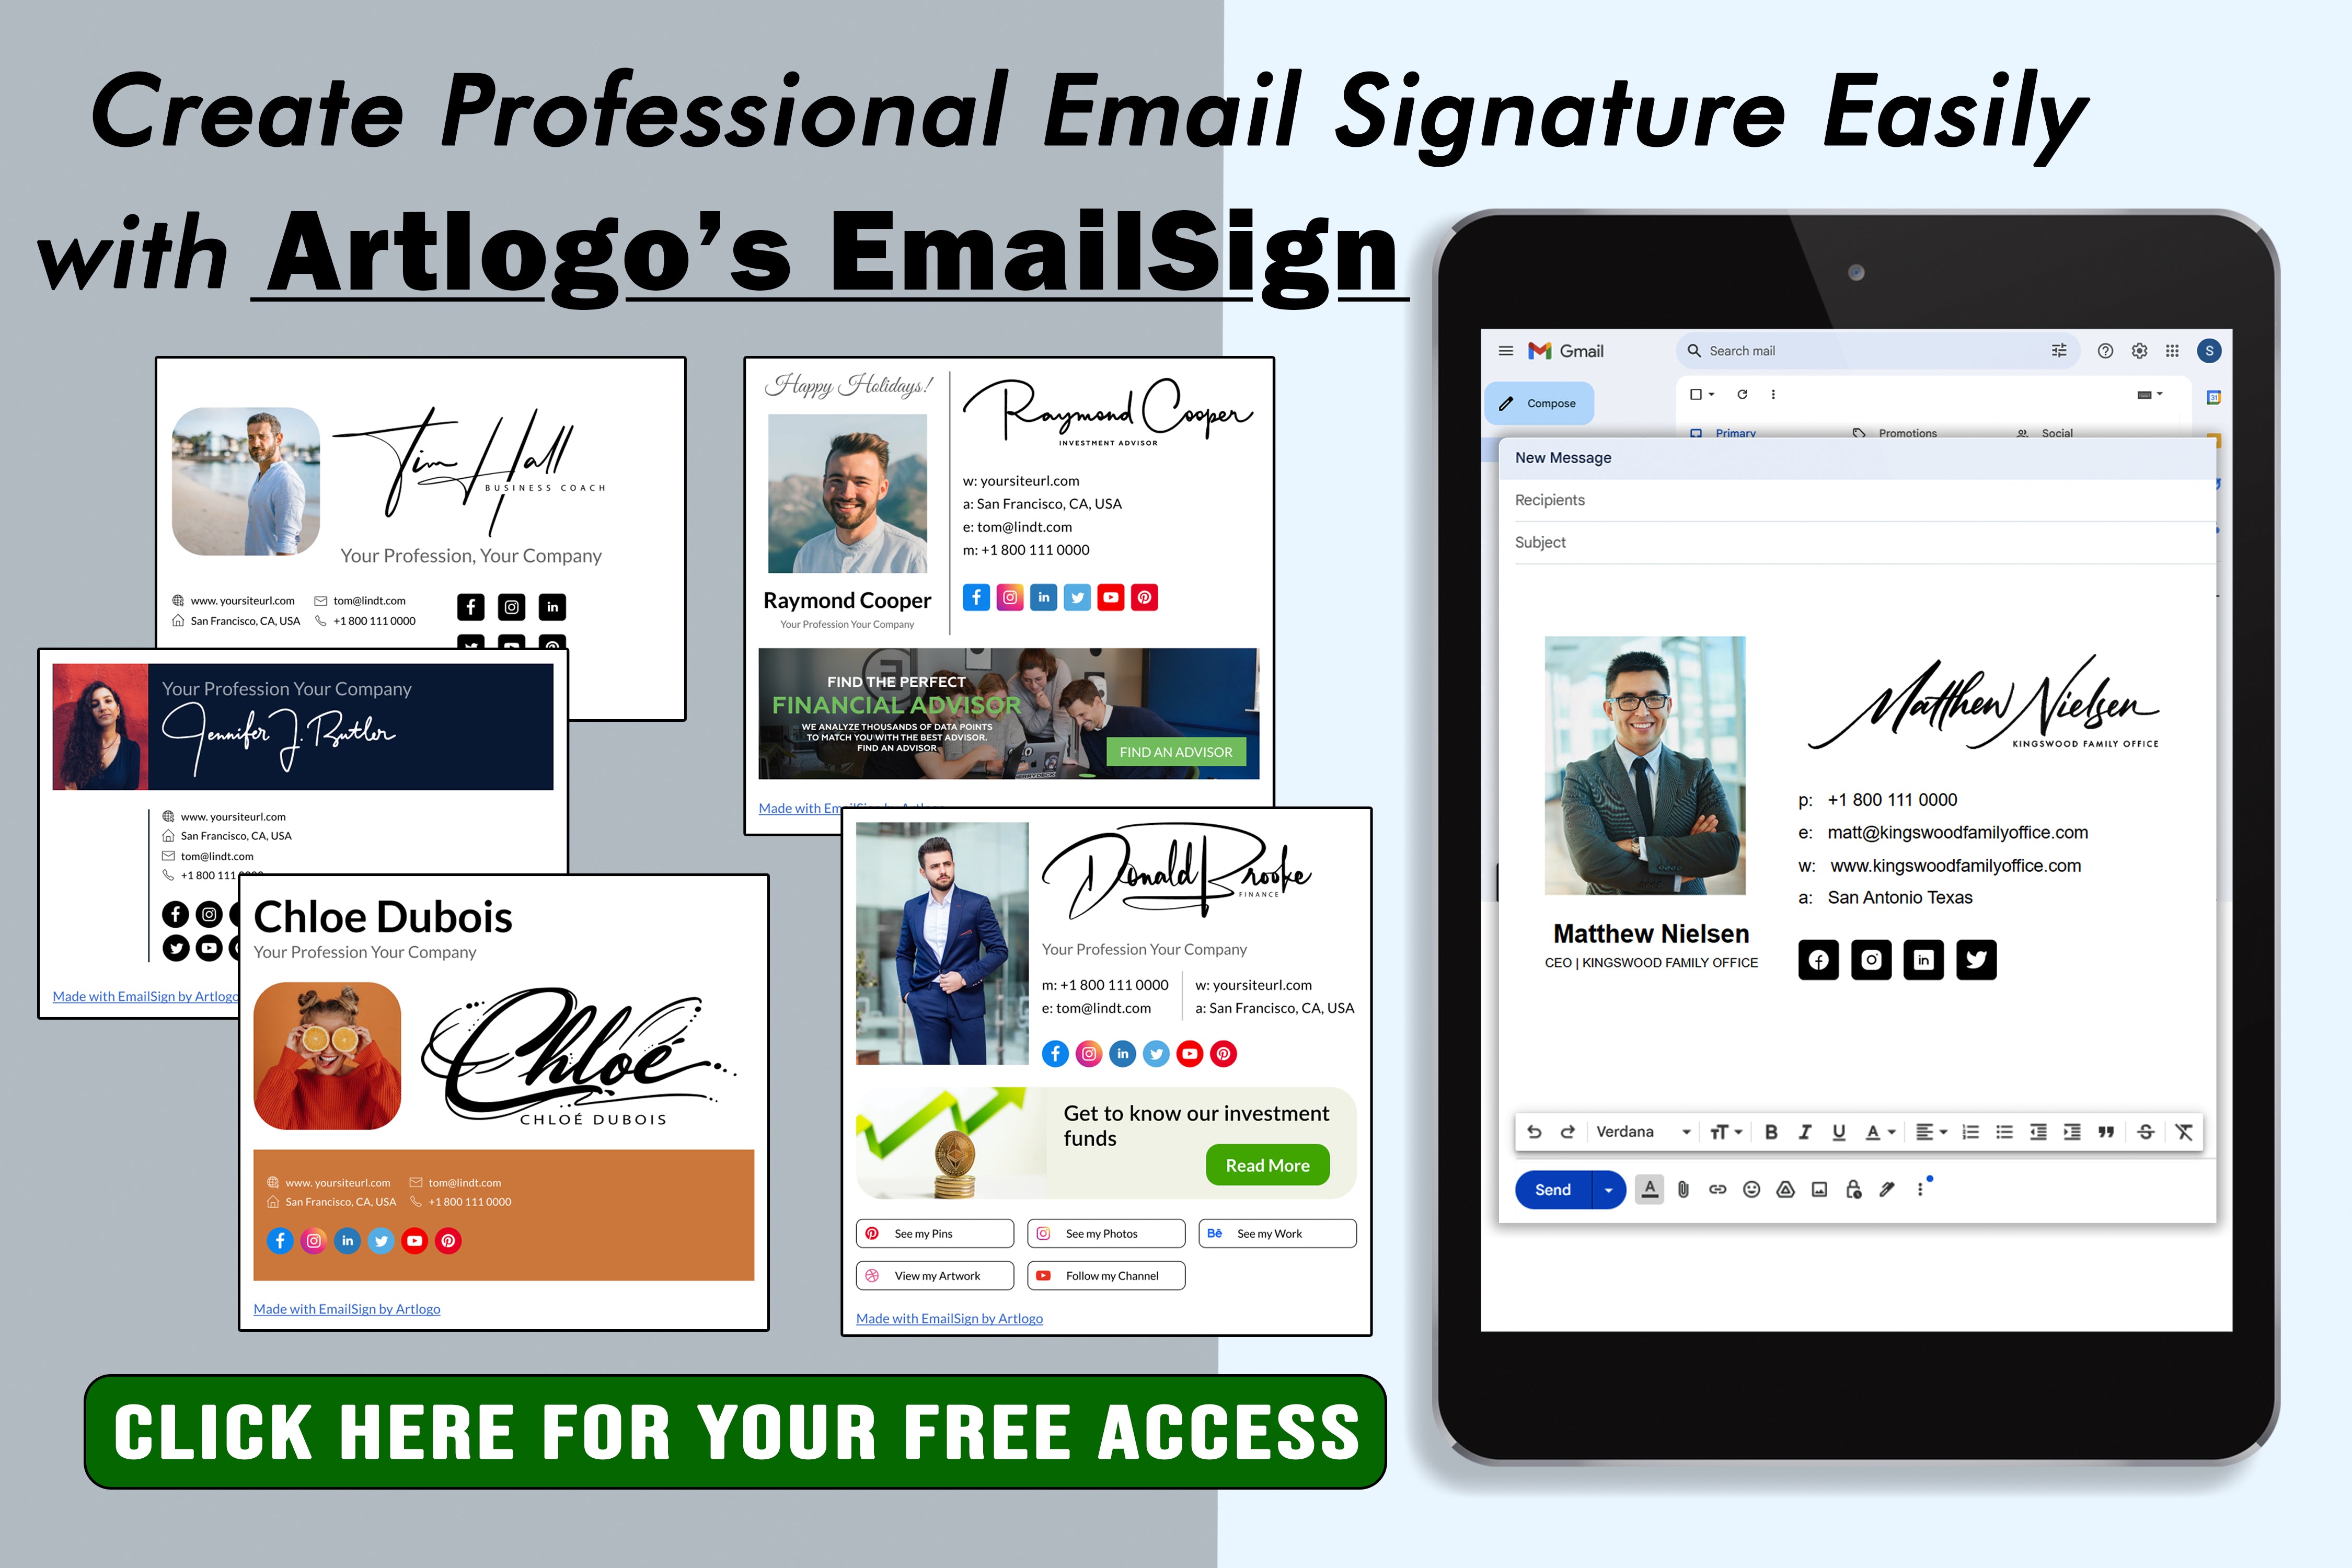 Mergulhe no mundo das assinaturas de e-mail e aprenda como criar uma assinatura única e profissional que o diferencie no espaço digital.